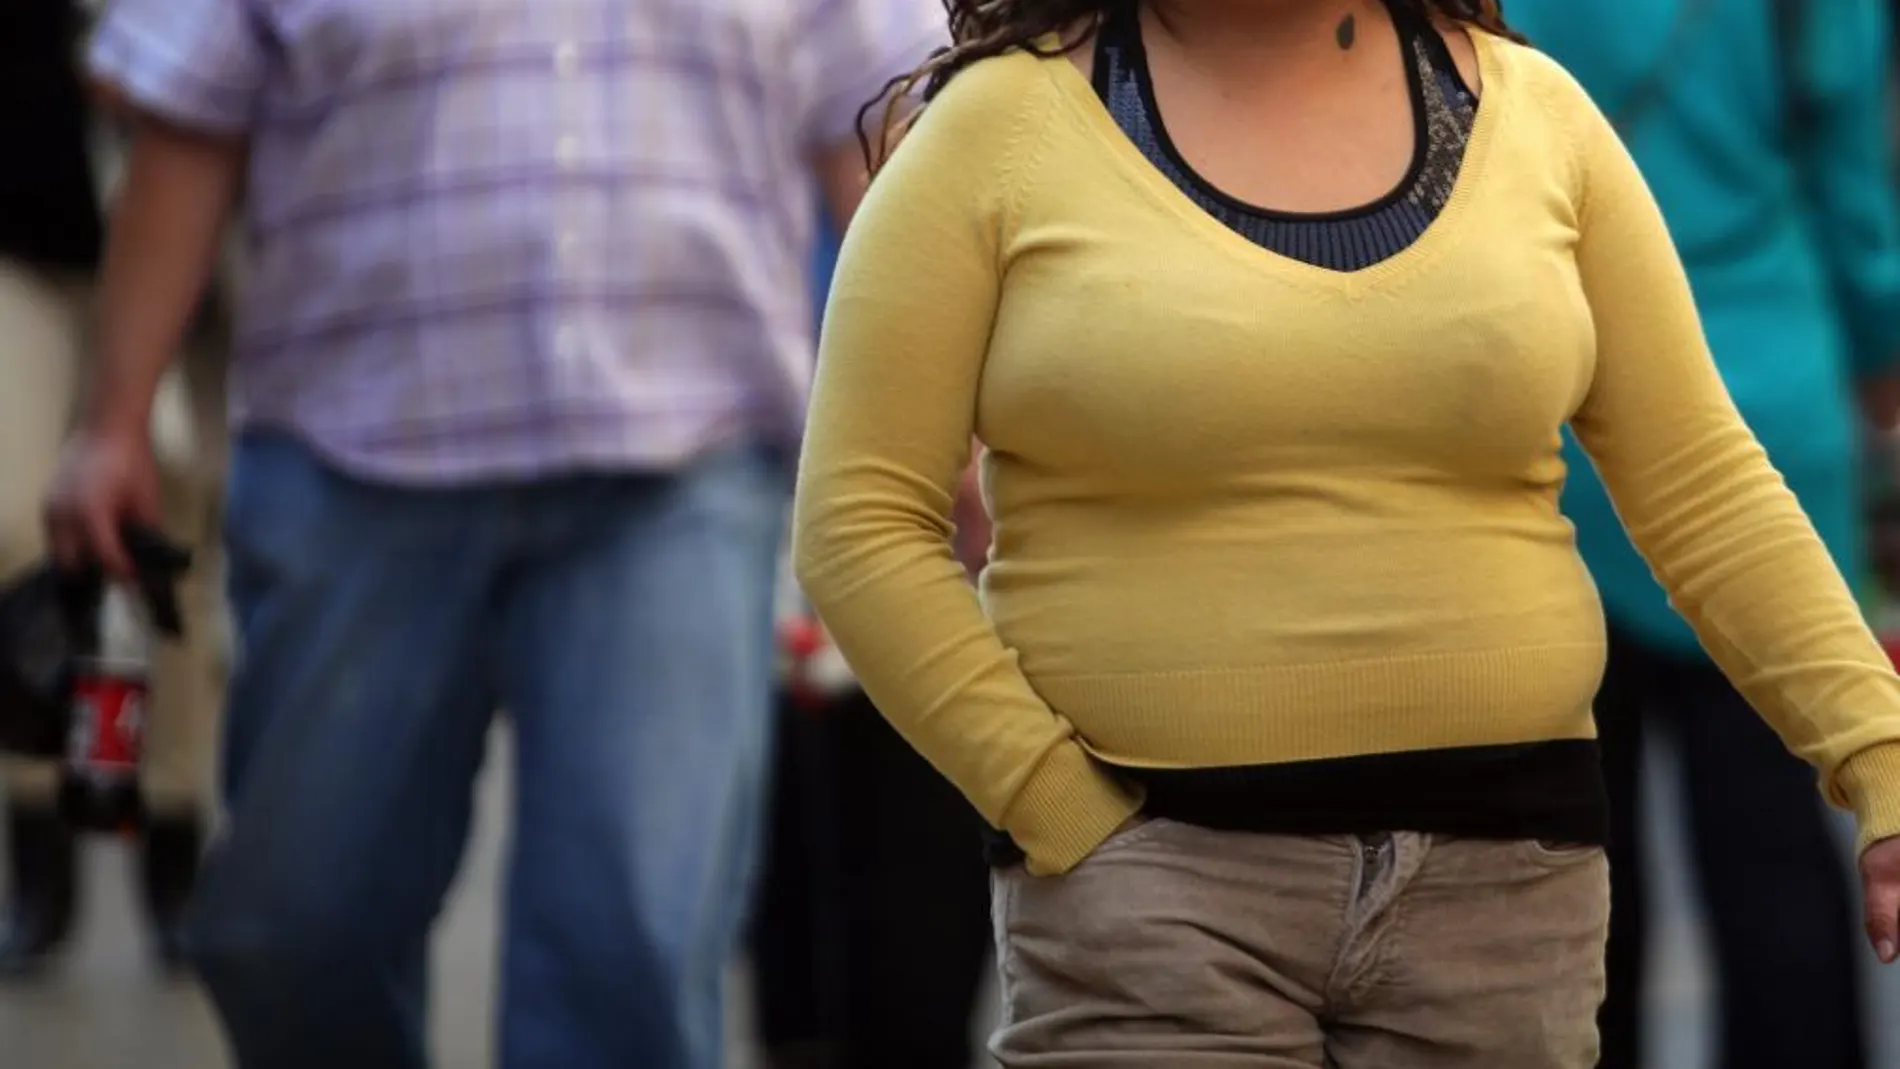 Una mujer con sobrepeso